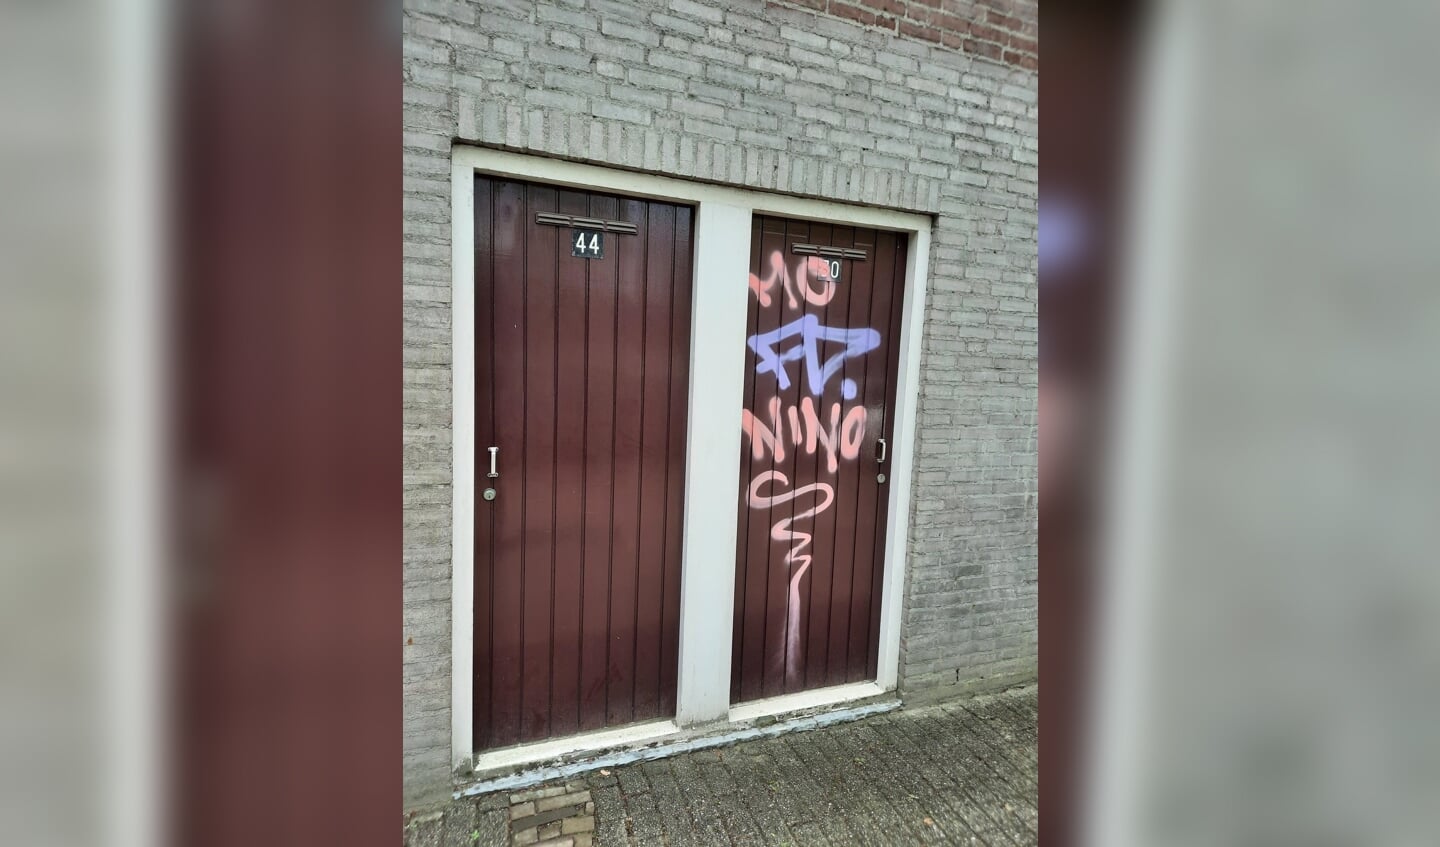 Graffitispuiters actief in Winkelcentrum Ussen